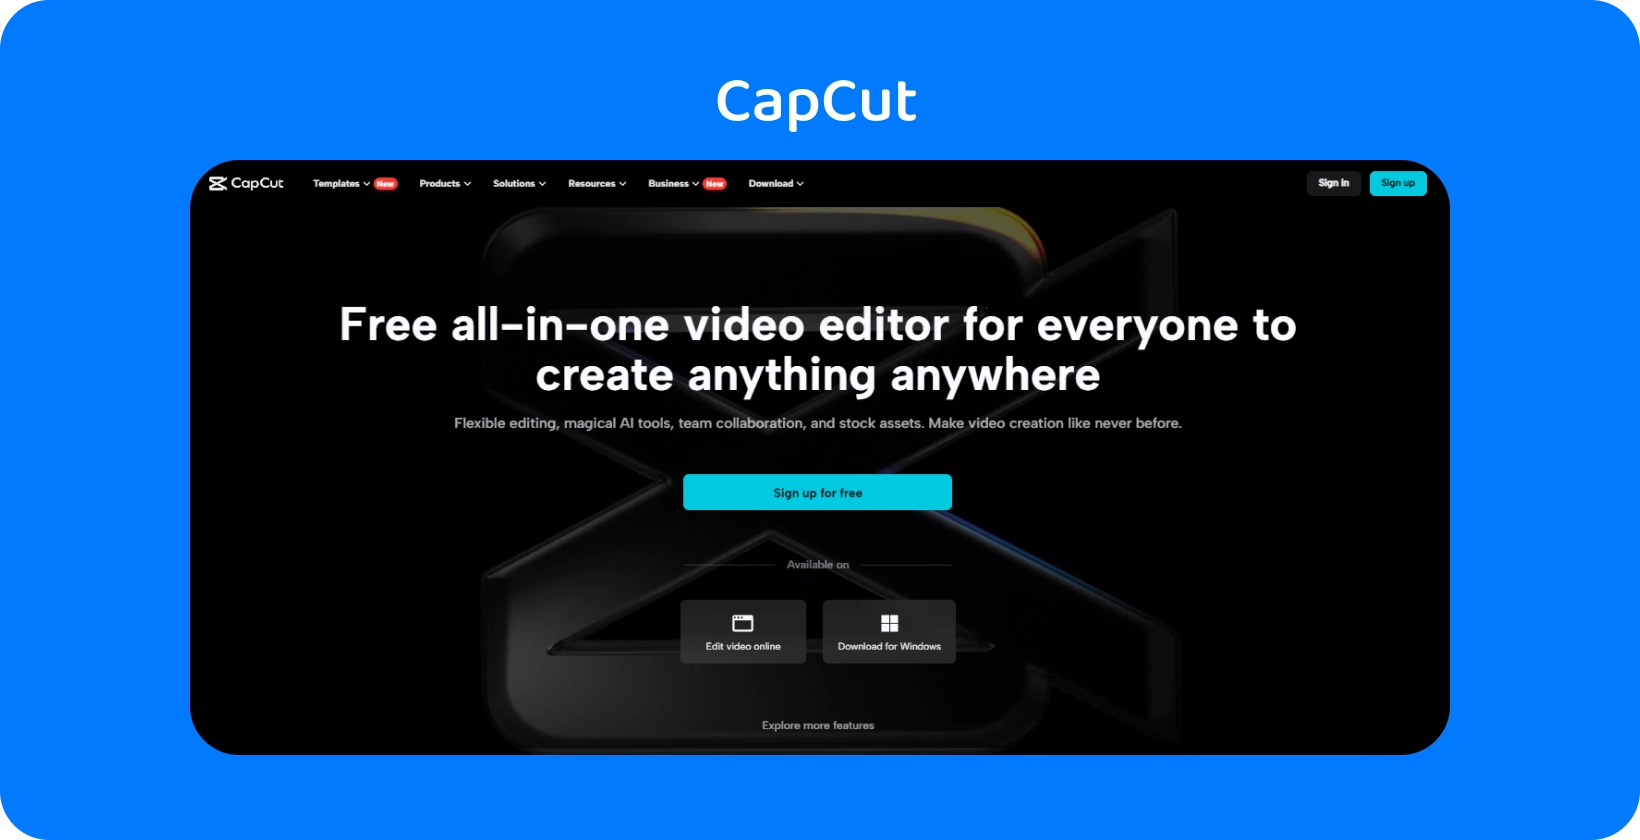 CapCut koduleht tutvustab tasuta kõik-ühes videoredaktorit sisu loomiseks mis tahes seadmes, tumeda ja klanitud kujundusega.
